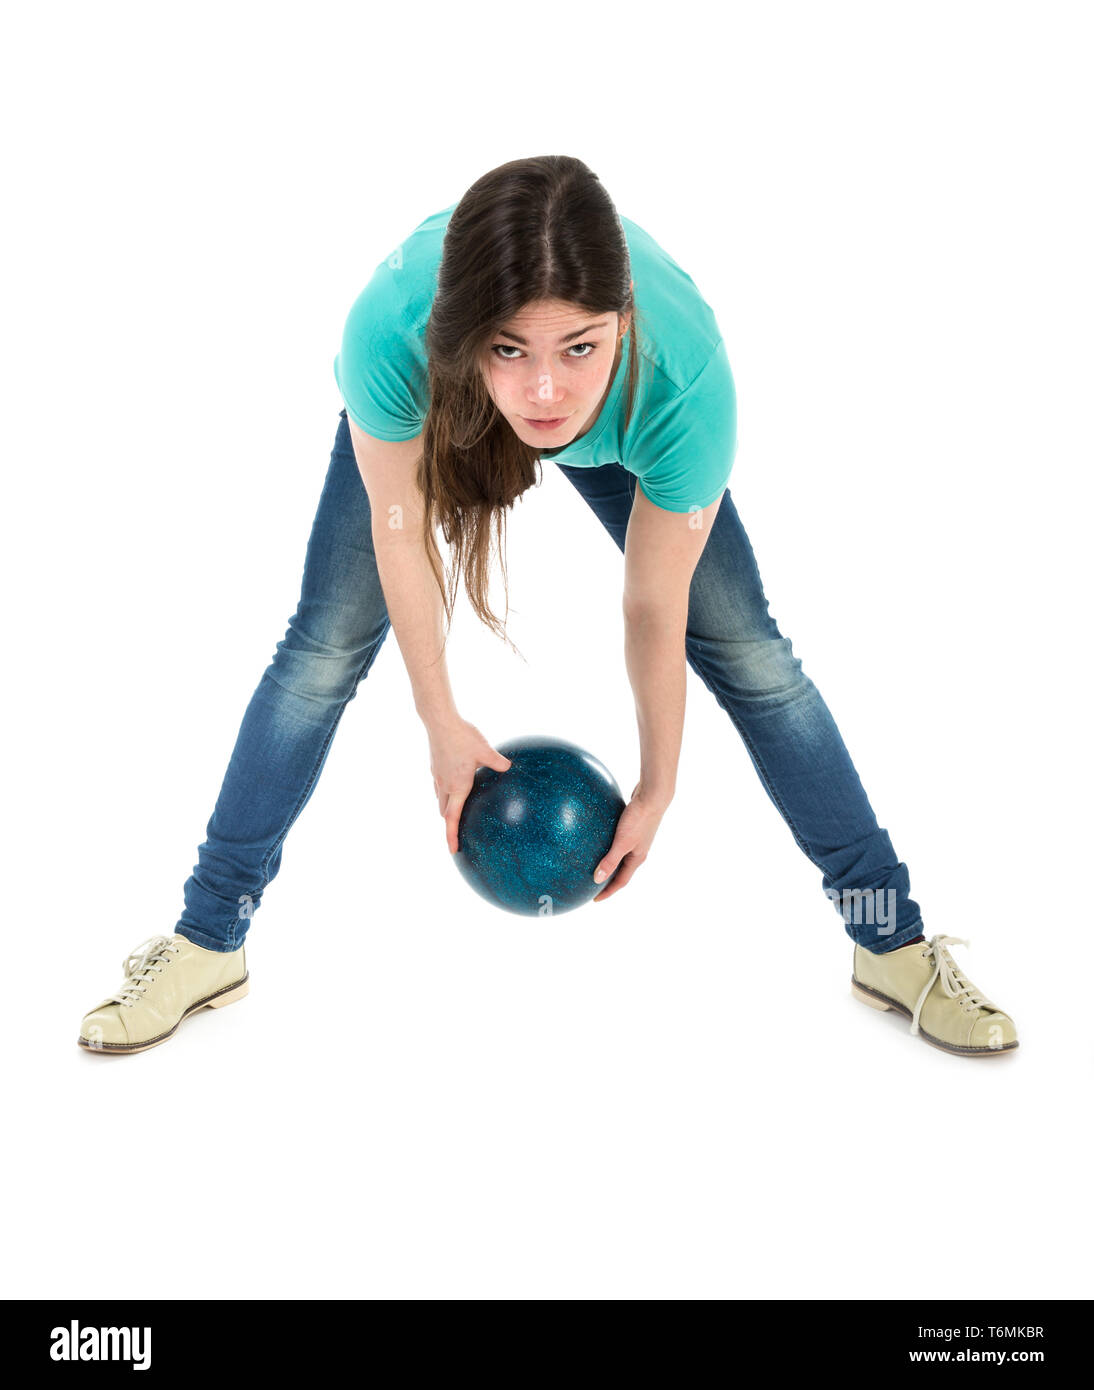 Бросание шаров. Мяч для боулинга. Женщина бросает мяч. Рука в шаре для боулинга. Боулинг бросок шара.